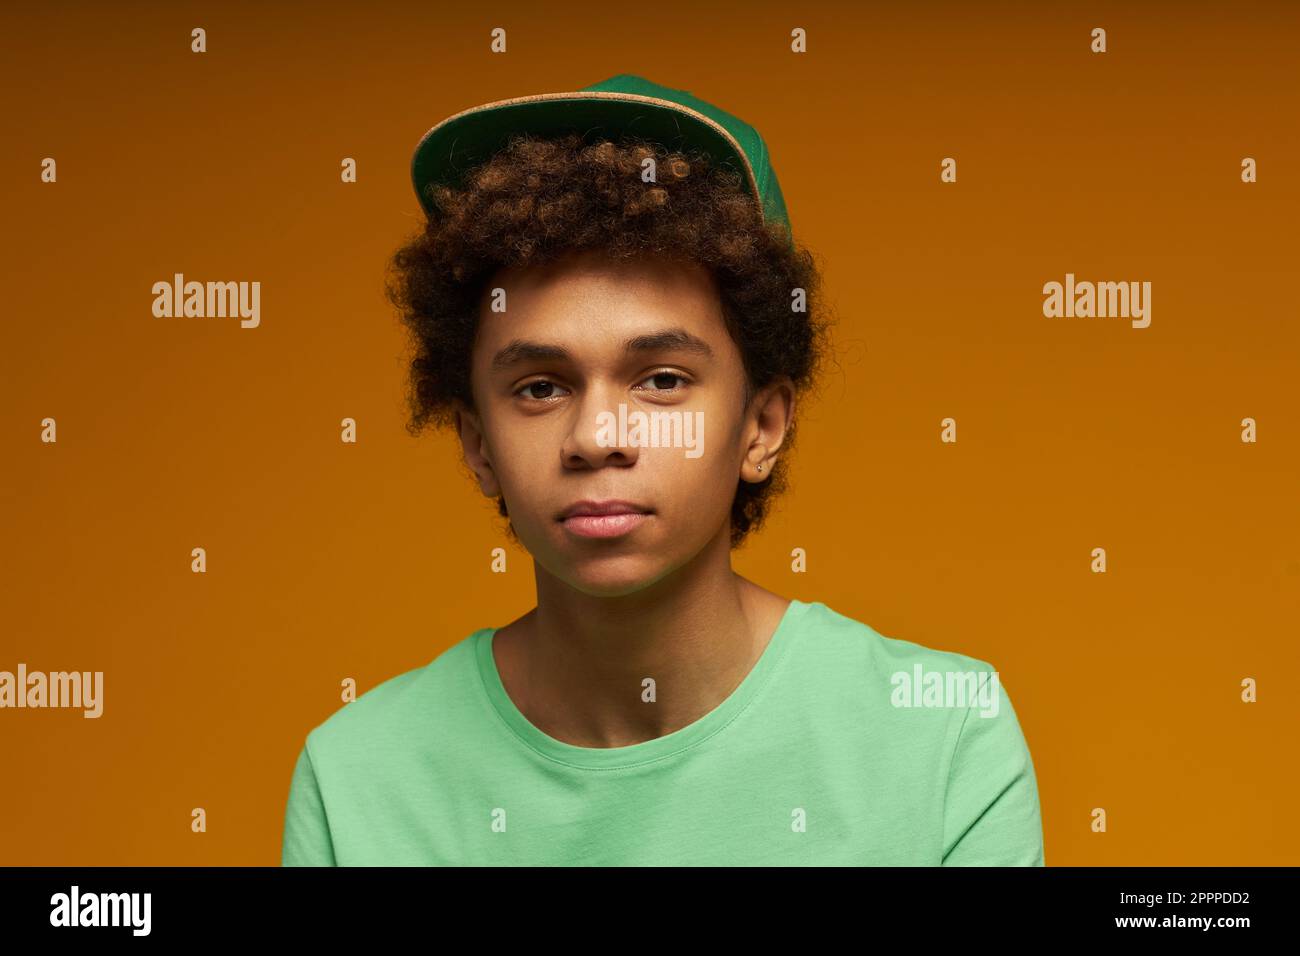 Süßer Teenager mit neutralem Gesichtsausdruck trägt ein grünes T-Shirt und eine Kappe und schaut in die Kamera, während er isoliert auf gelbem Hintergrund posiert Stockfoto